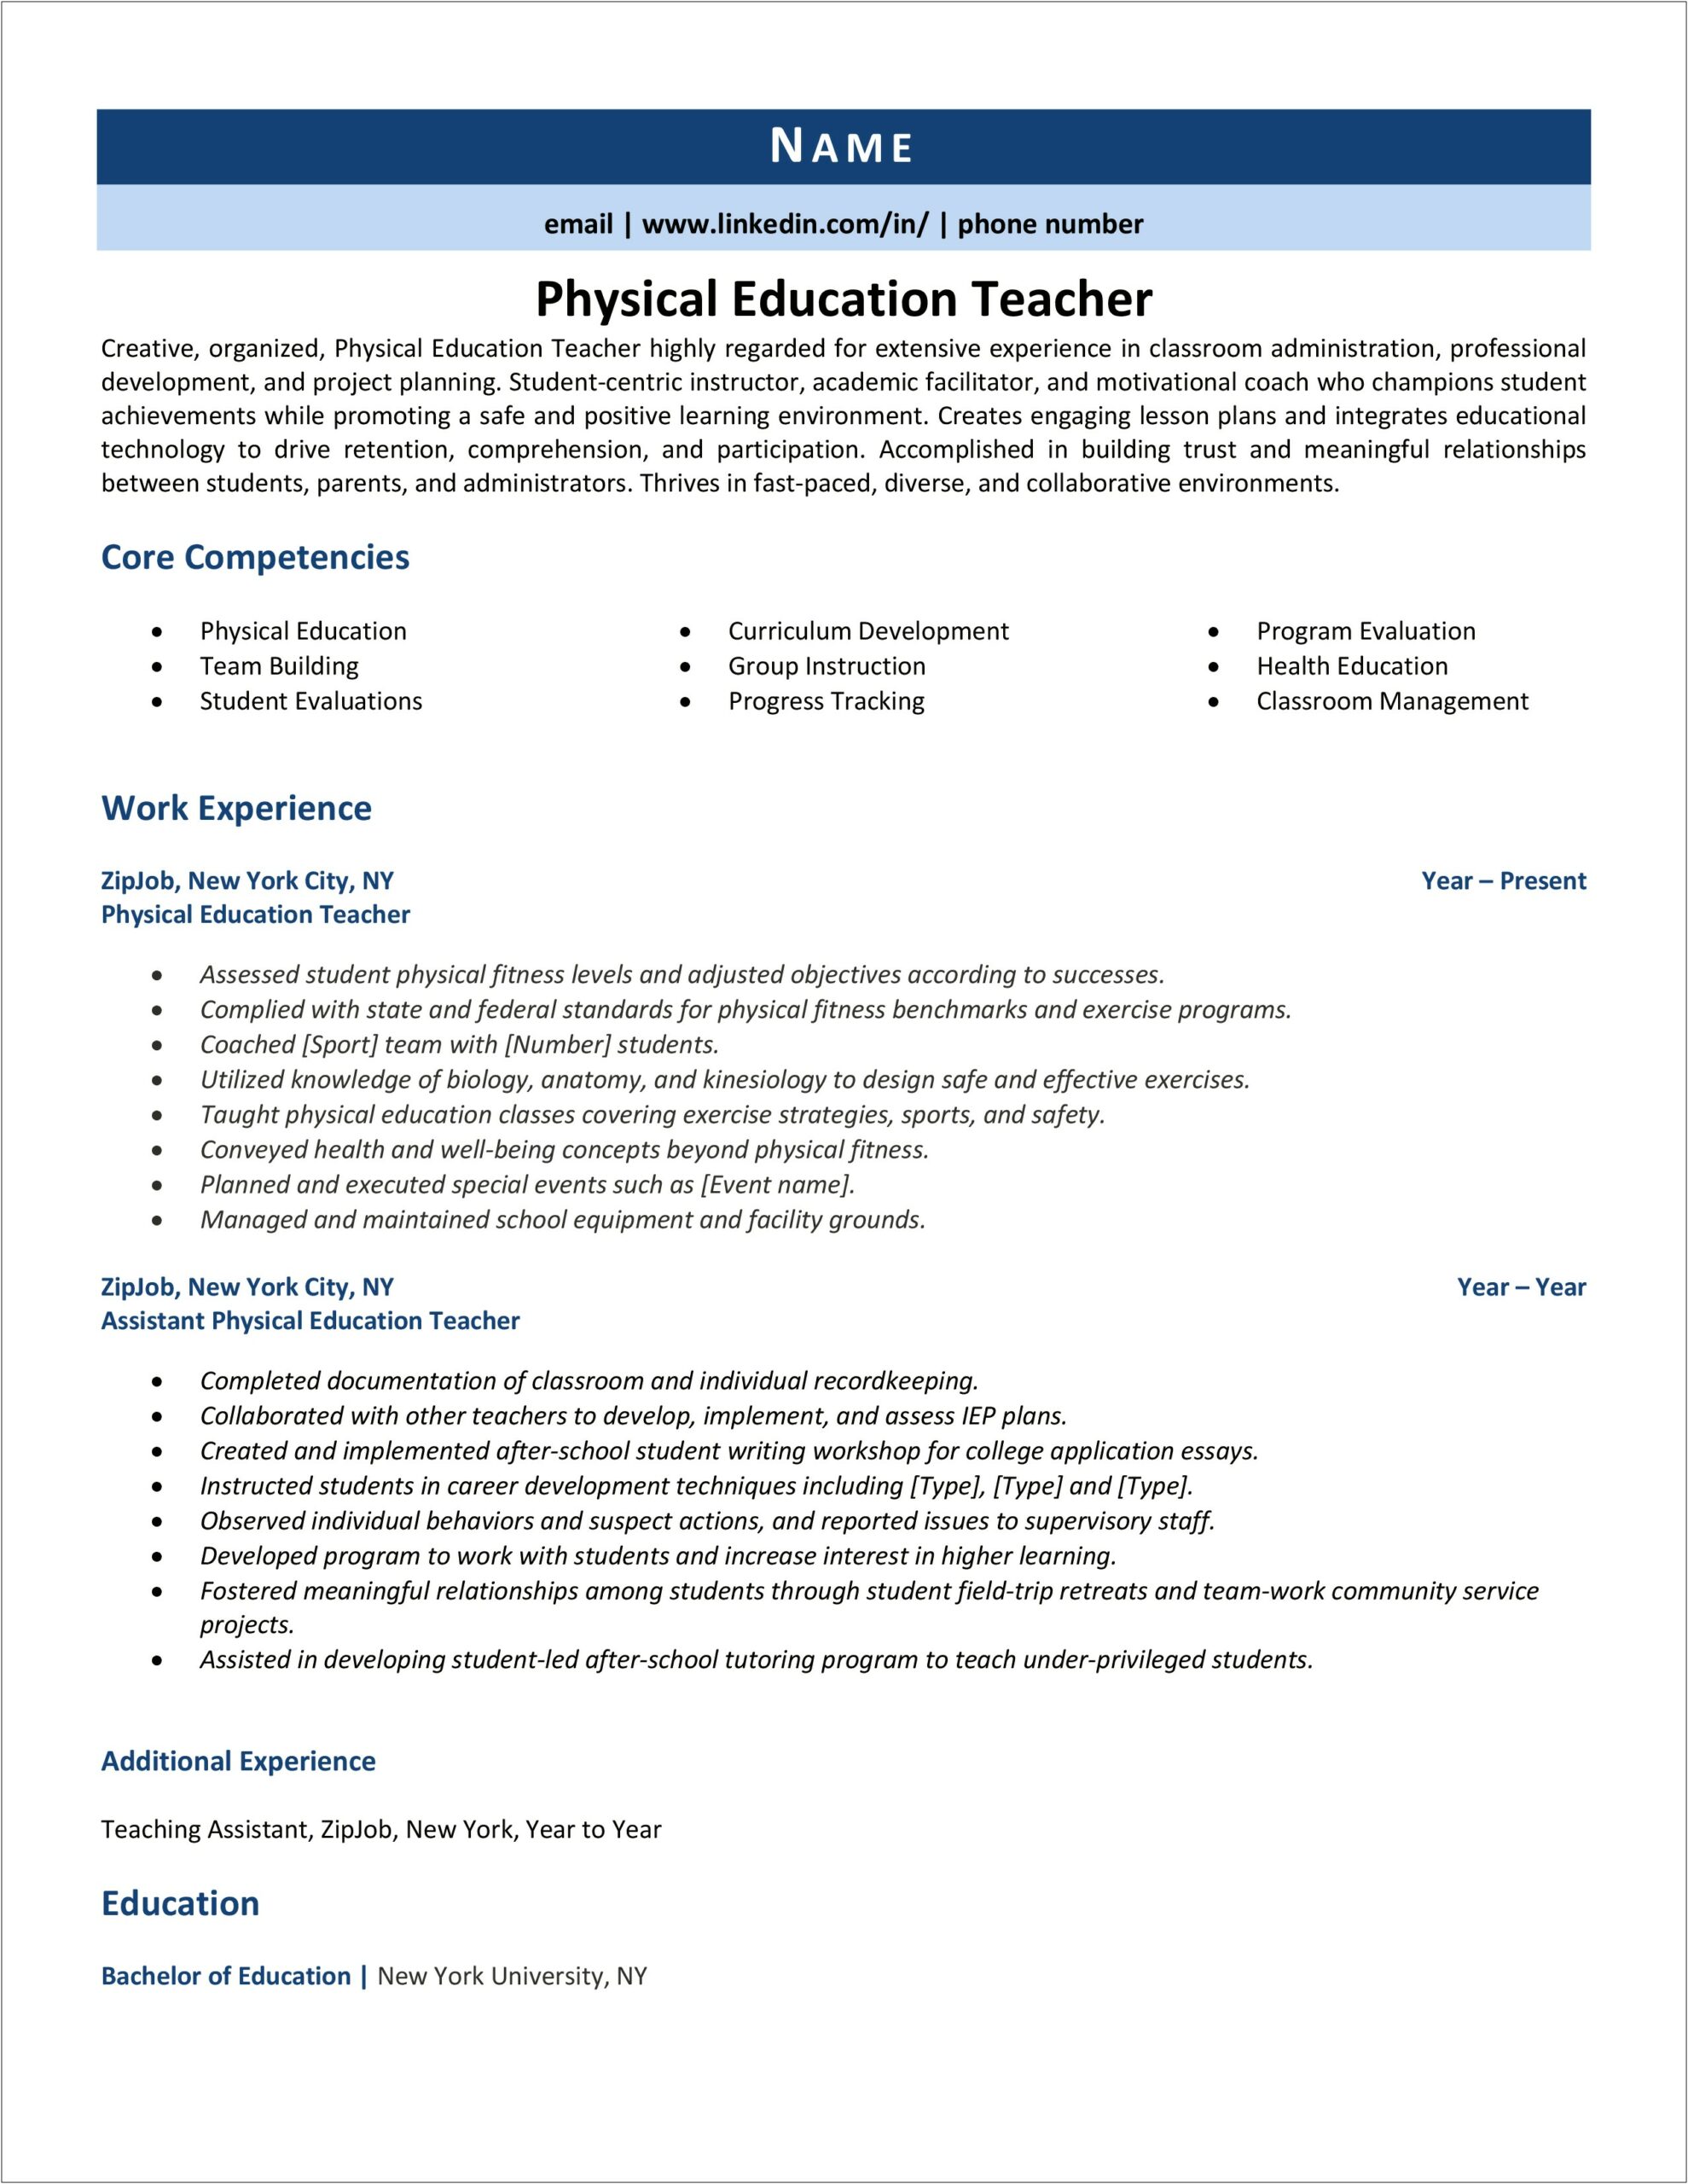 Physical Education Elementary Teacher Resume Sample